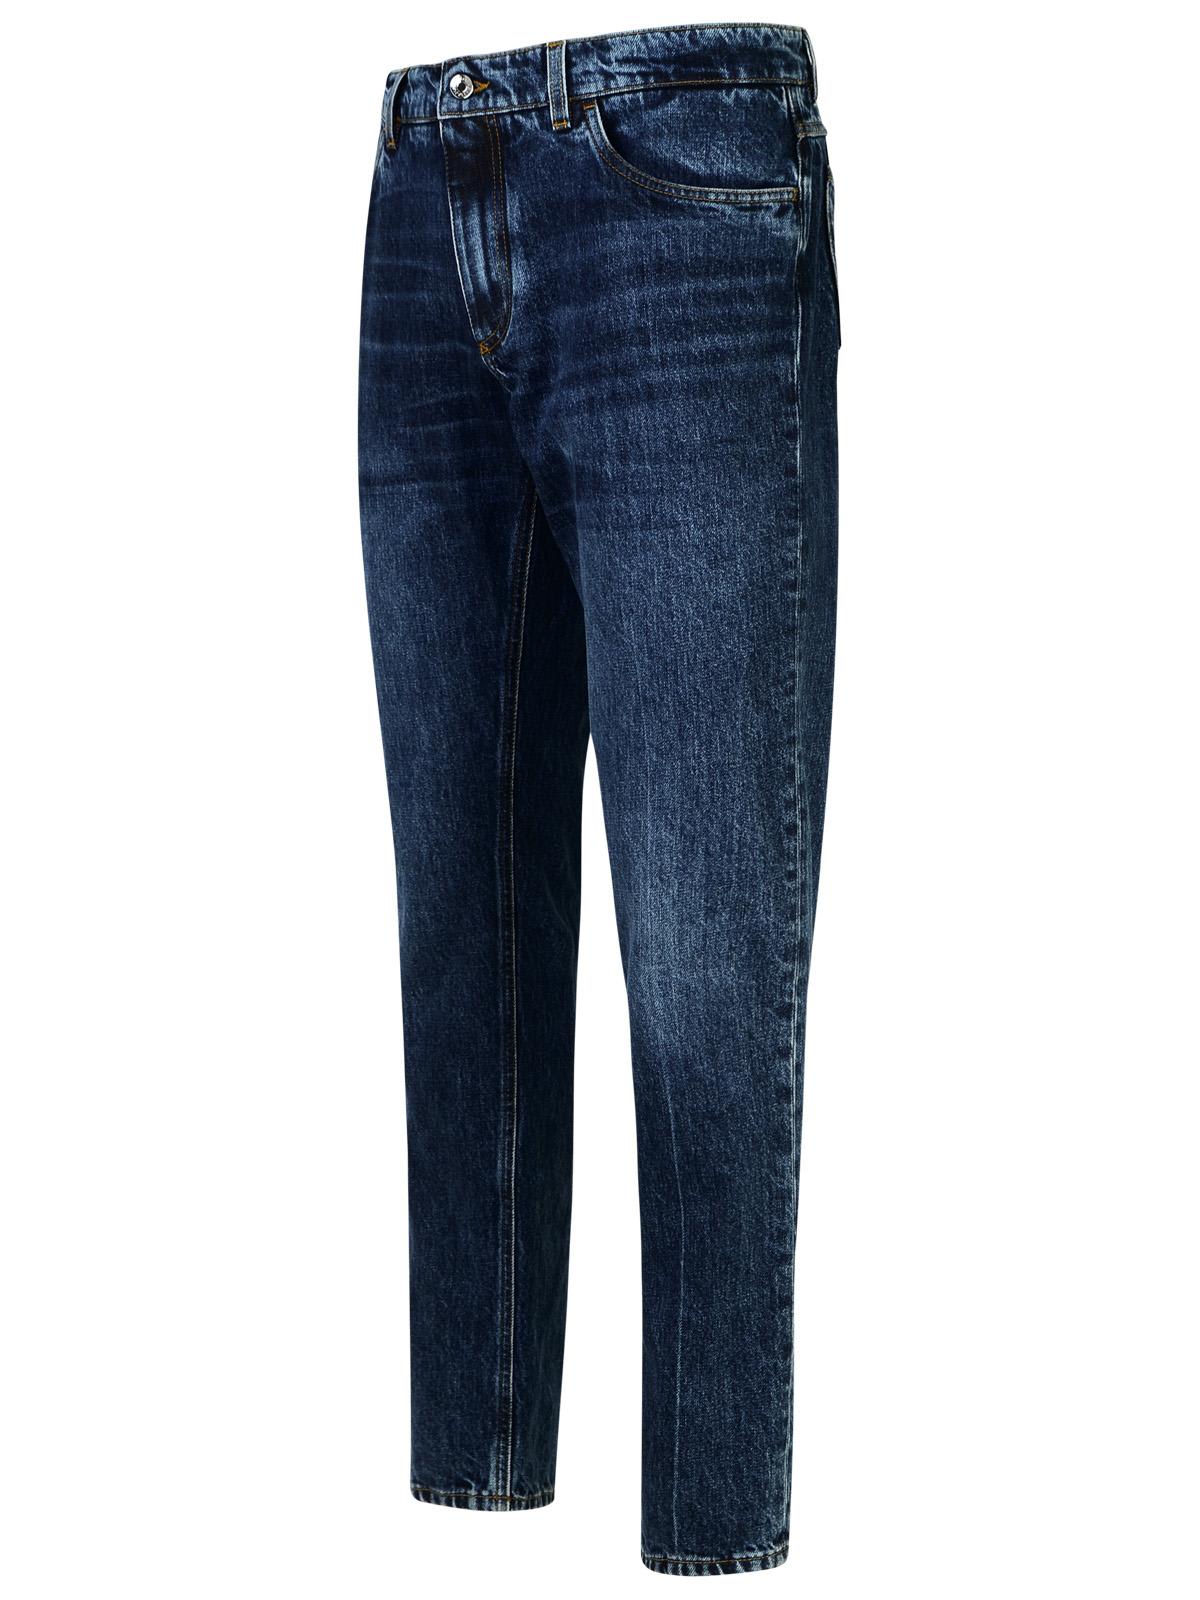 Shop Dolce & Gabbana Blue Cotton Jeans